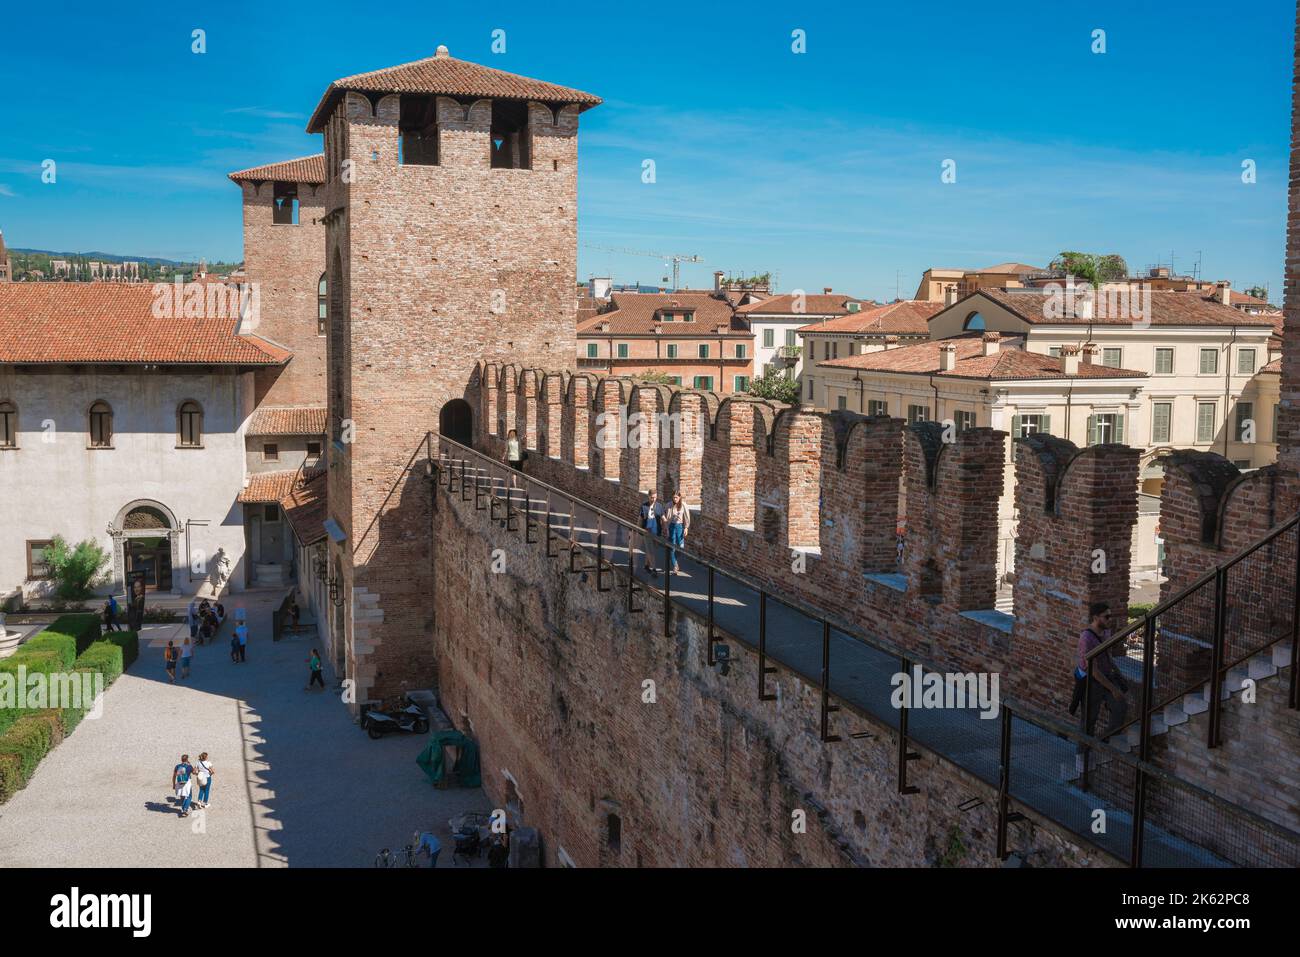 Castelvecchio Verona, Blick im Sommer auf Türme und Zinnen entlang der südöstlichen Wand der Festung Castelvecchio - heute ein Museum - Verona, Italien Stockfoto